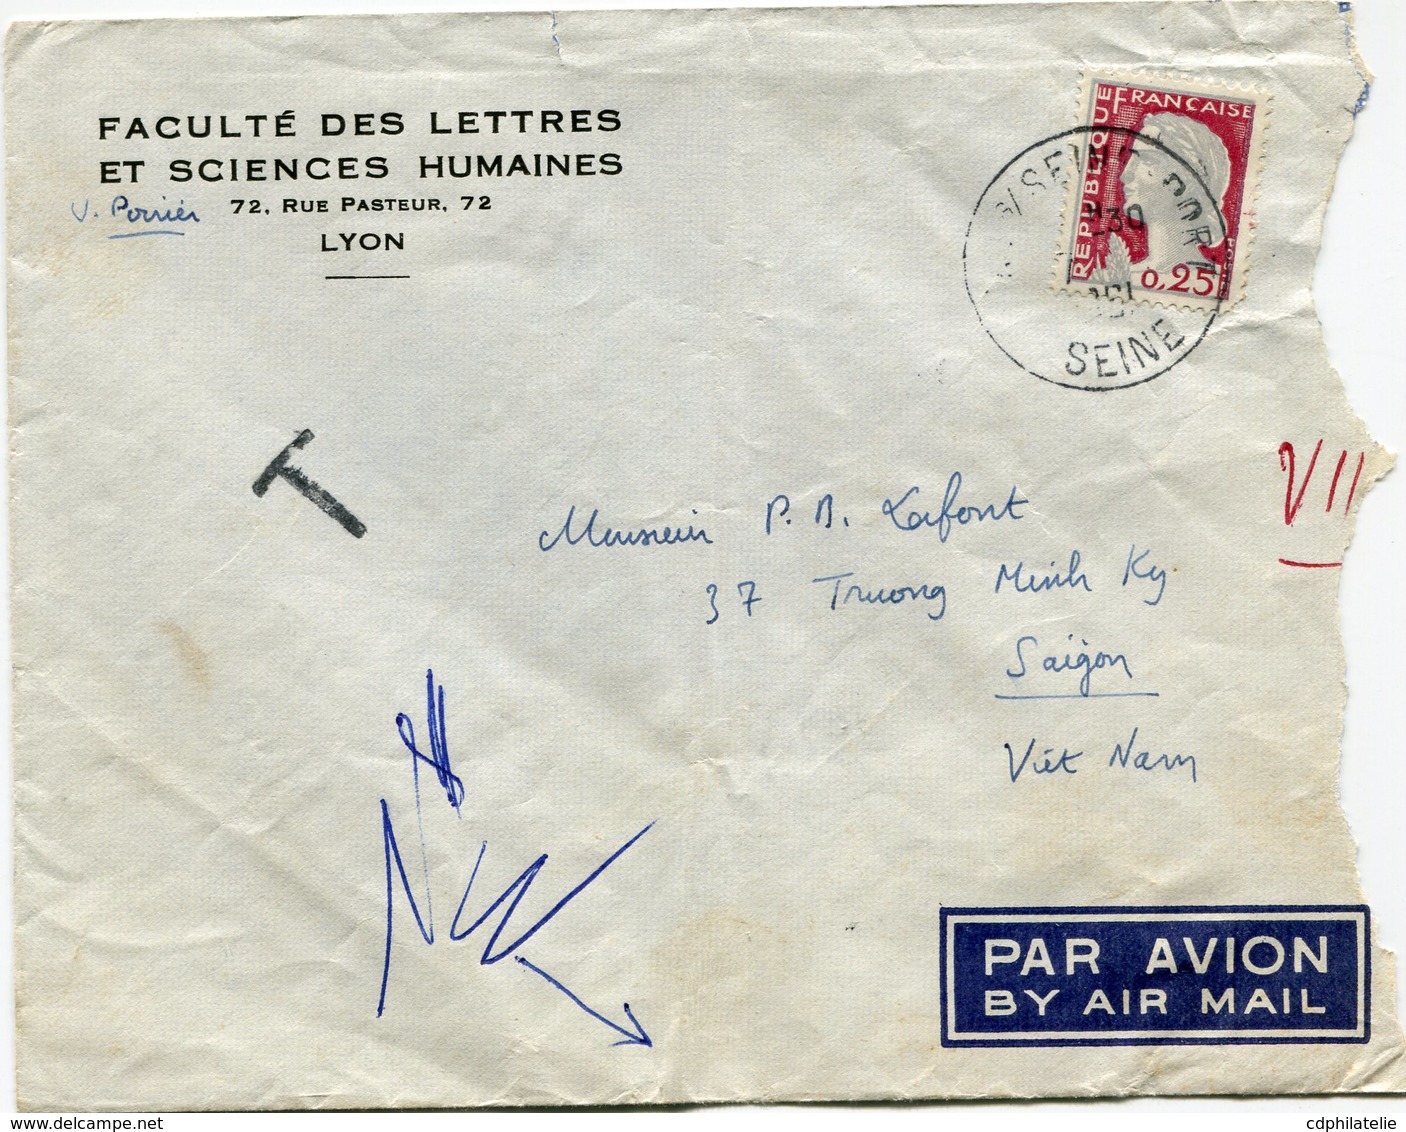 FRANCE LETTRE PAR AVION DEPART ? S/SEINE PORT ?-?-1961 SEINE TAXEE A L'ARRIVEE A SAIGON LE 11-?-1961 VIETNAM - 1960 Marianne Of Decaris